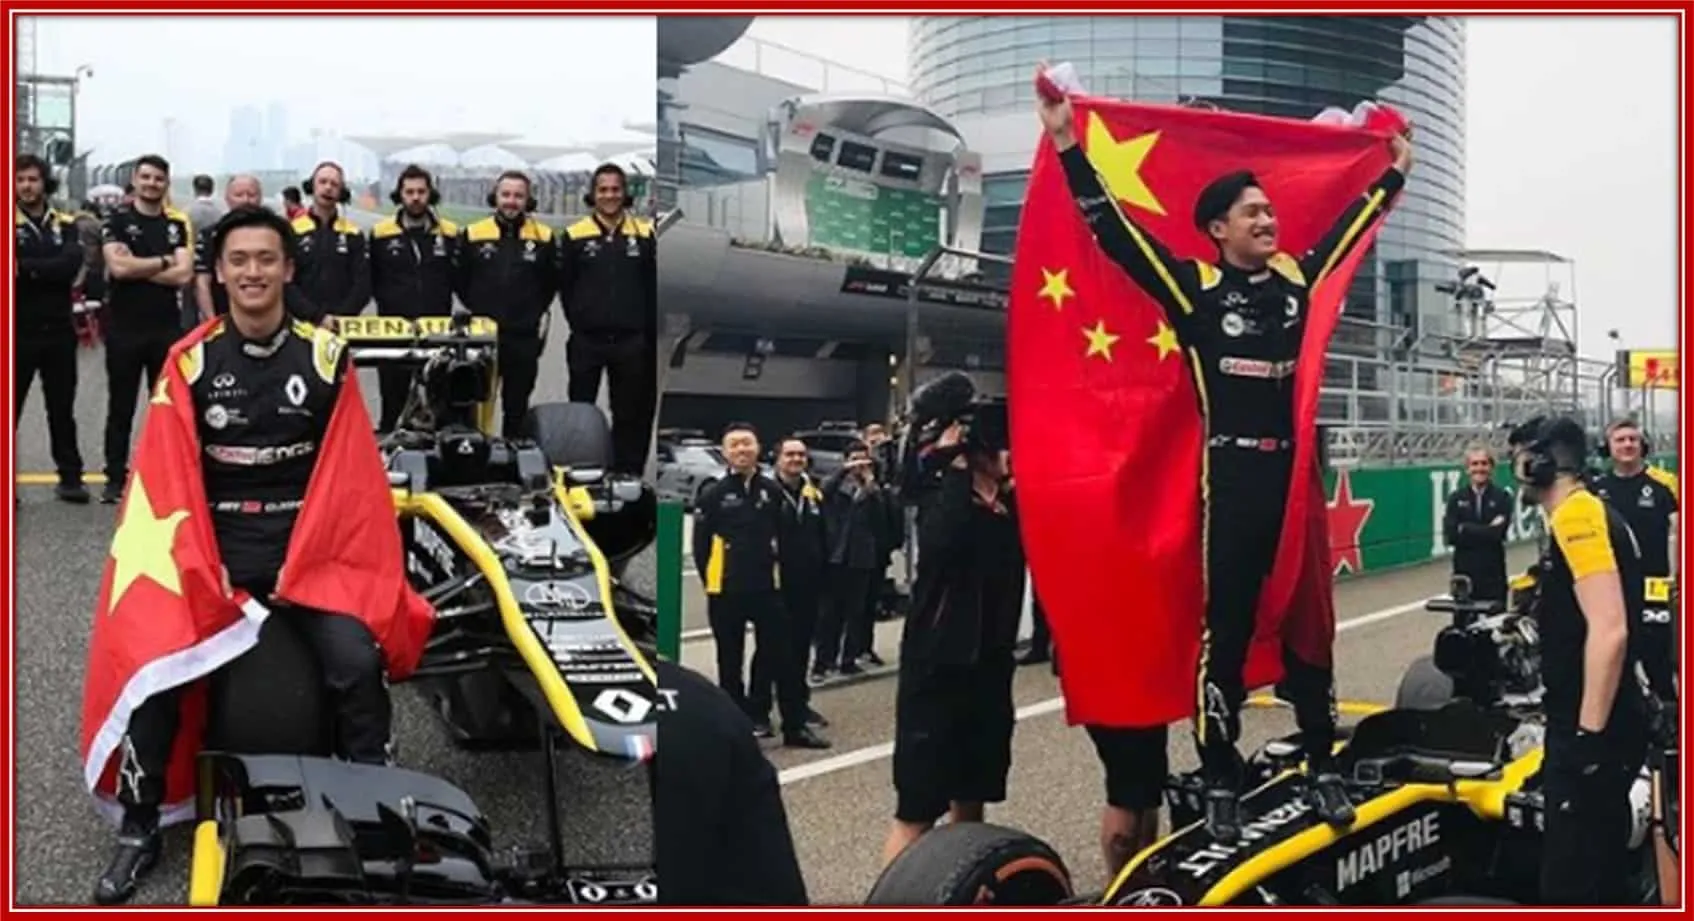 The 2019 season saw Zhou make his FIA Formula 2 Championship debut.